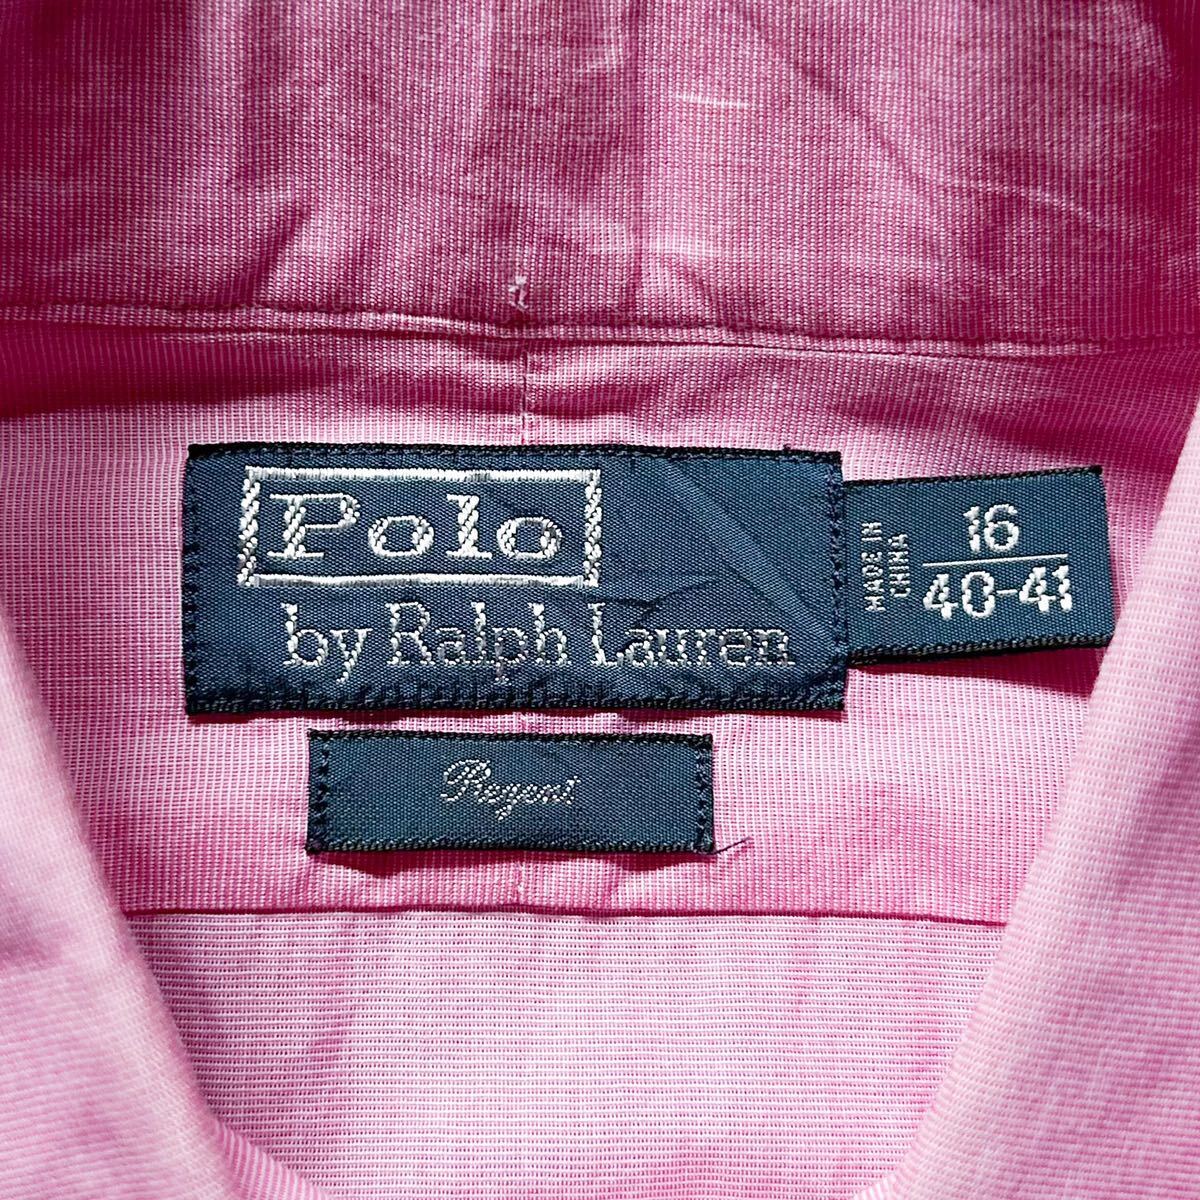 Polo Ralph Lauren ポロ ラルフローレン 長袖シャツ REGENT ピンク 16 40-41 XLサイズ相当 マチ付き 裾ポニー 刺繍 襟芯 コットン 100%_画像9